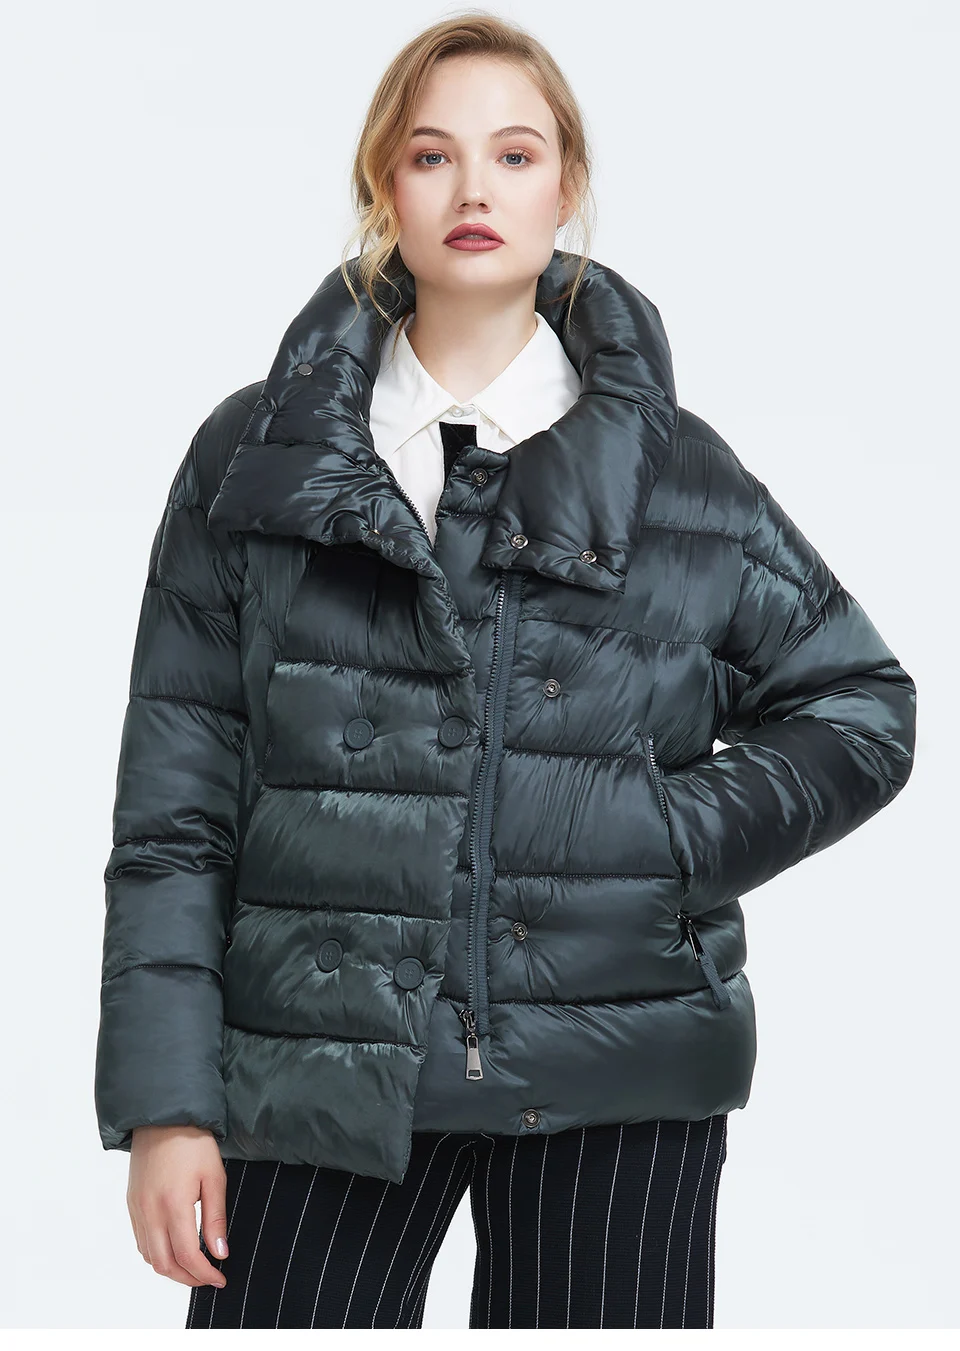 Astrid Зима новое поступление пуховик женский темный цвет верхняя одежда высокое качество короткий стиль толстый хлопок зимнее пальто для женщи AR-7031